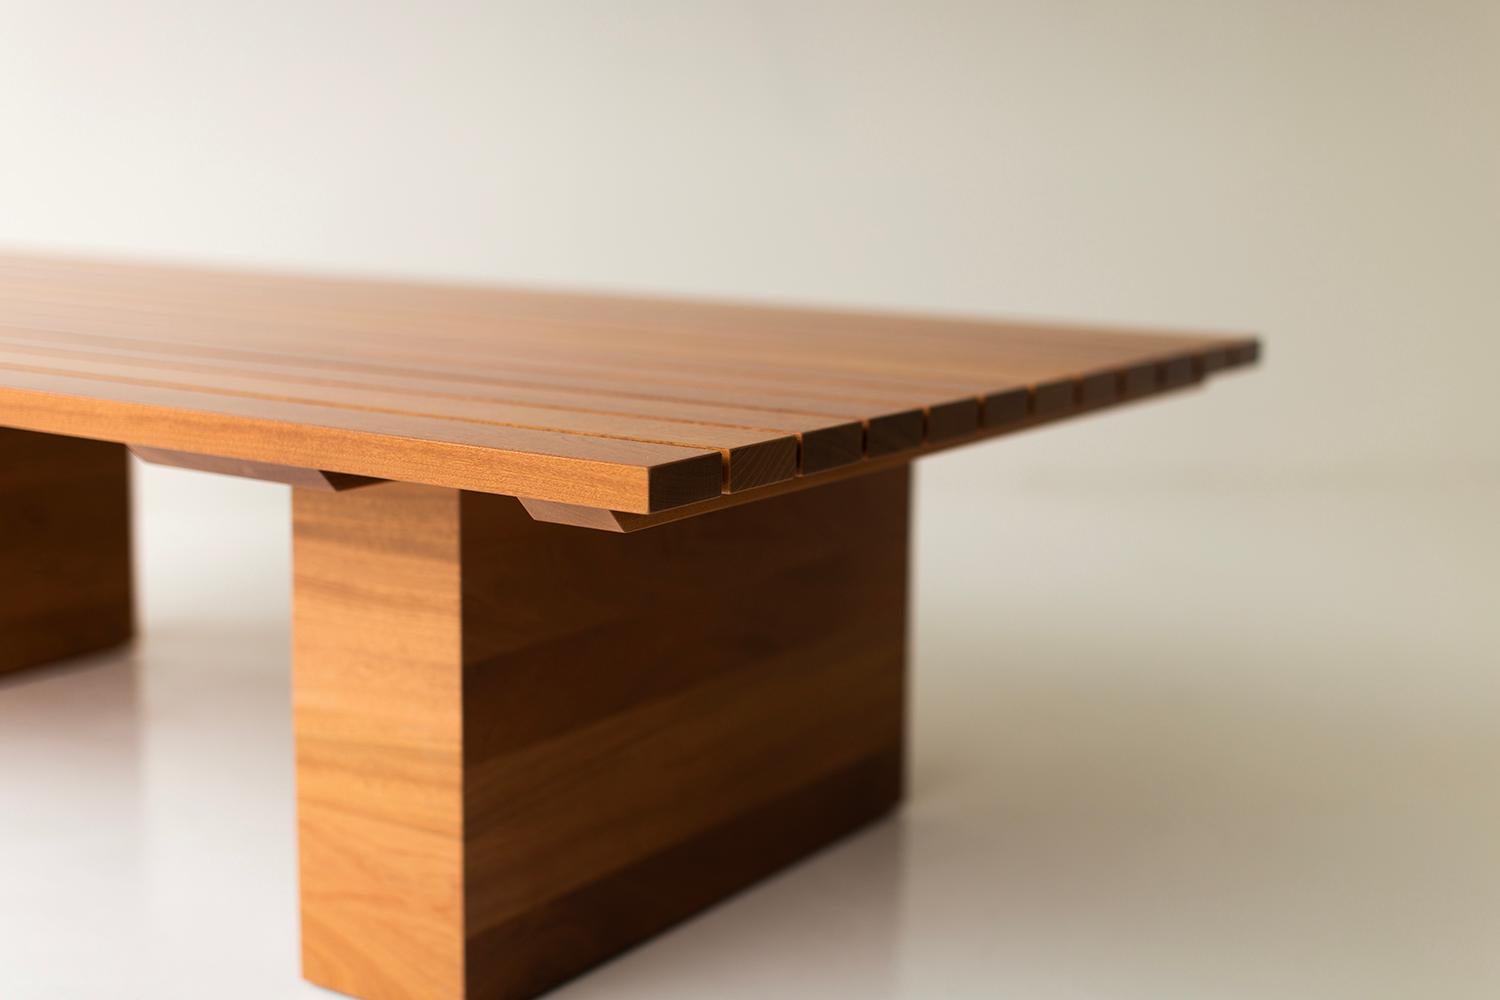 American Bertu Coffee Table, Outdoor Wood Coffee Table, Coffee Table, Suelo For Sale